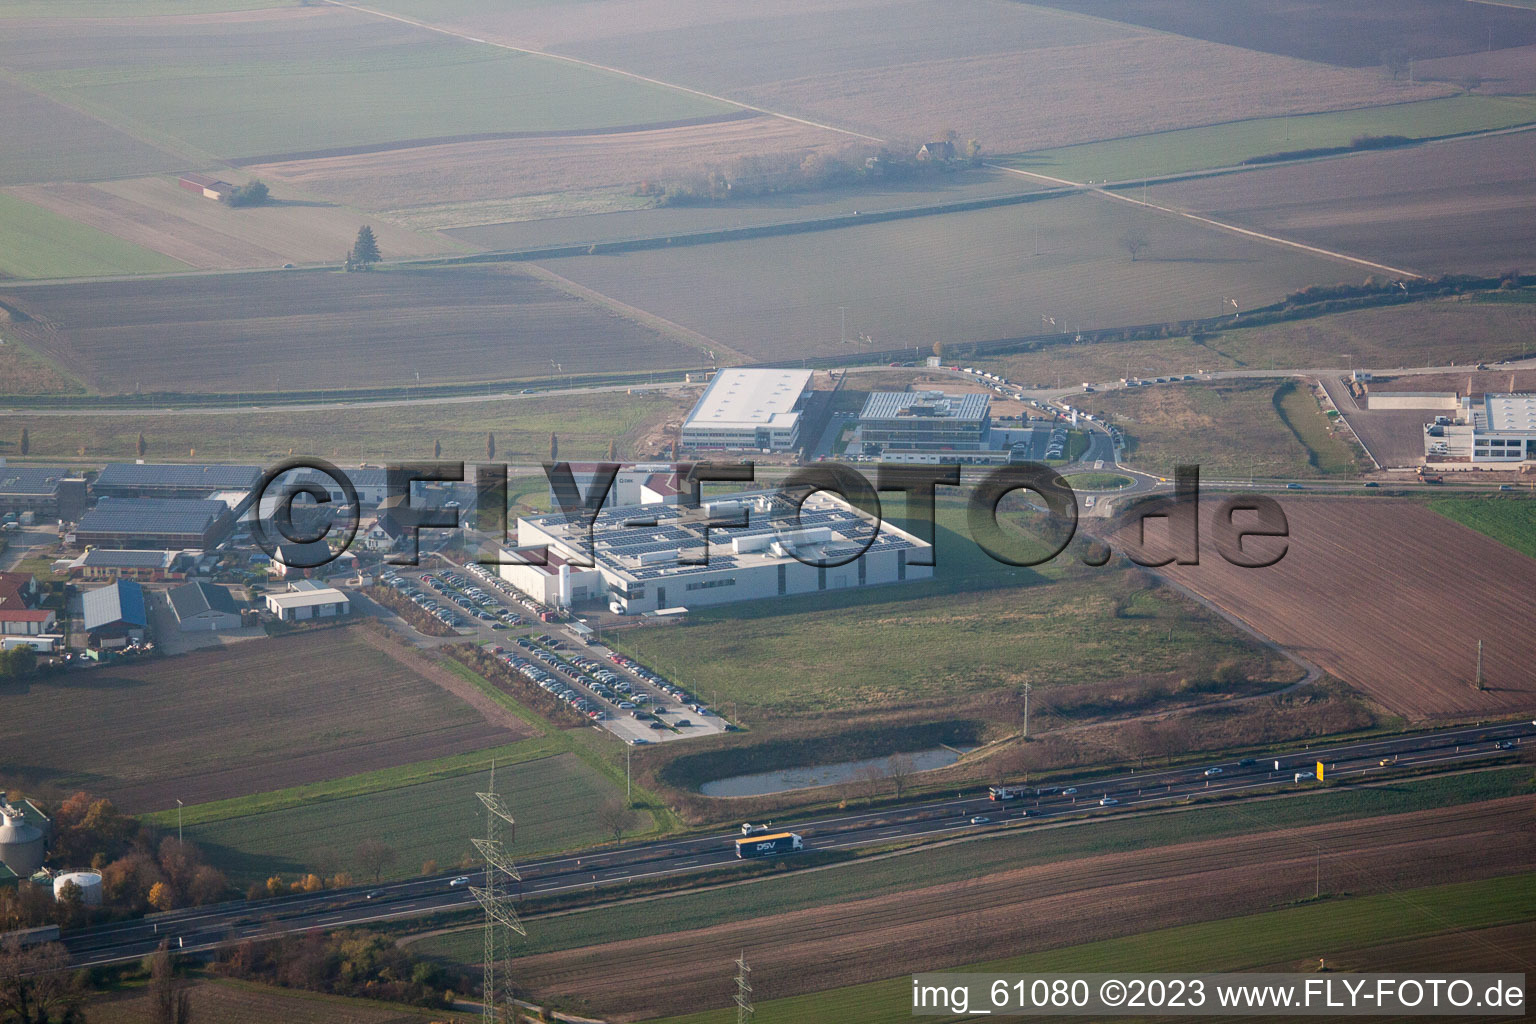 N, zone industrielle à Rülzheim dans le département Rhénanie-Palatinat, Allemagne du point de vue du drone